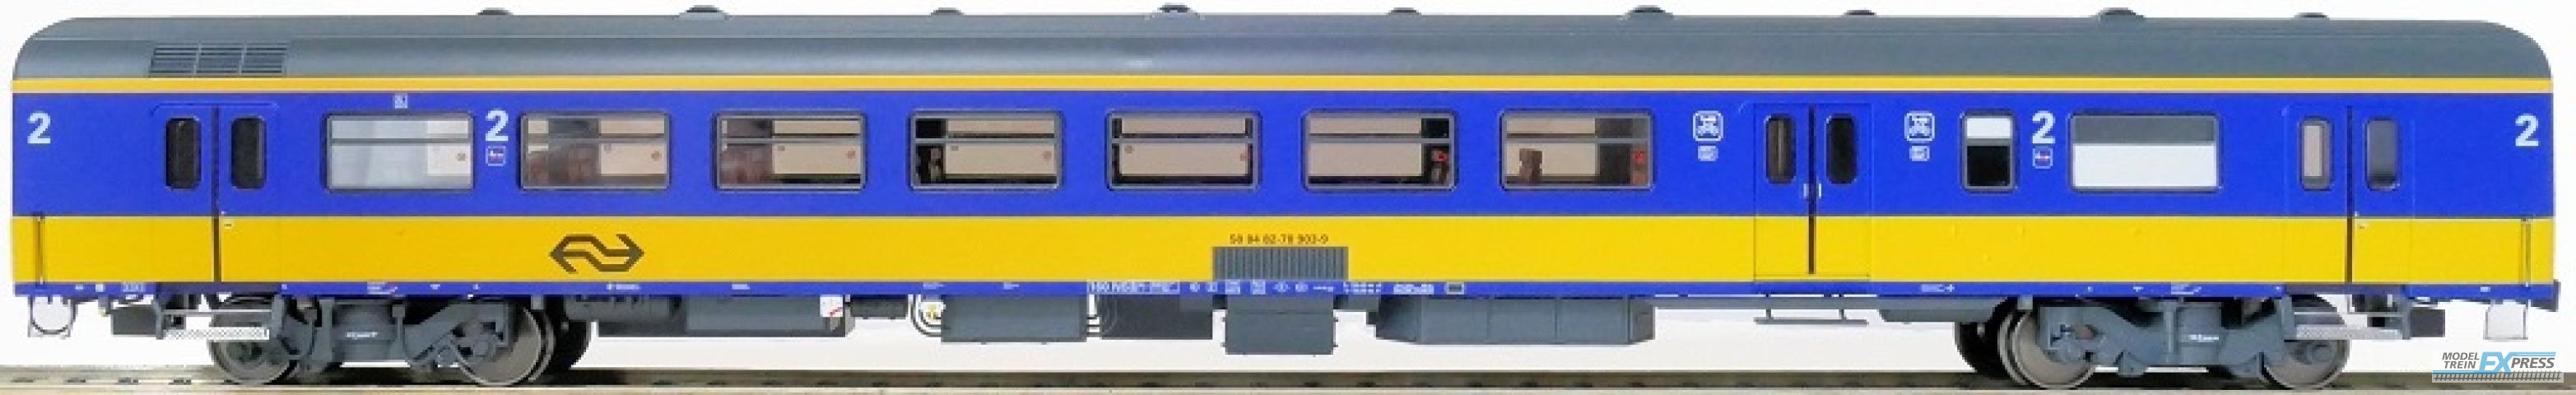 Exact-train 11164 NS ICR (Originalversion) Gepäckwagen BKD (Farbe Gelb / Blau) mit Beleuchtung und Figuren, Ep. IV